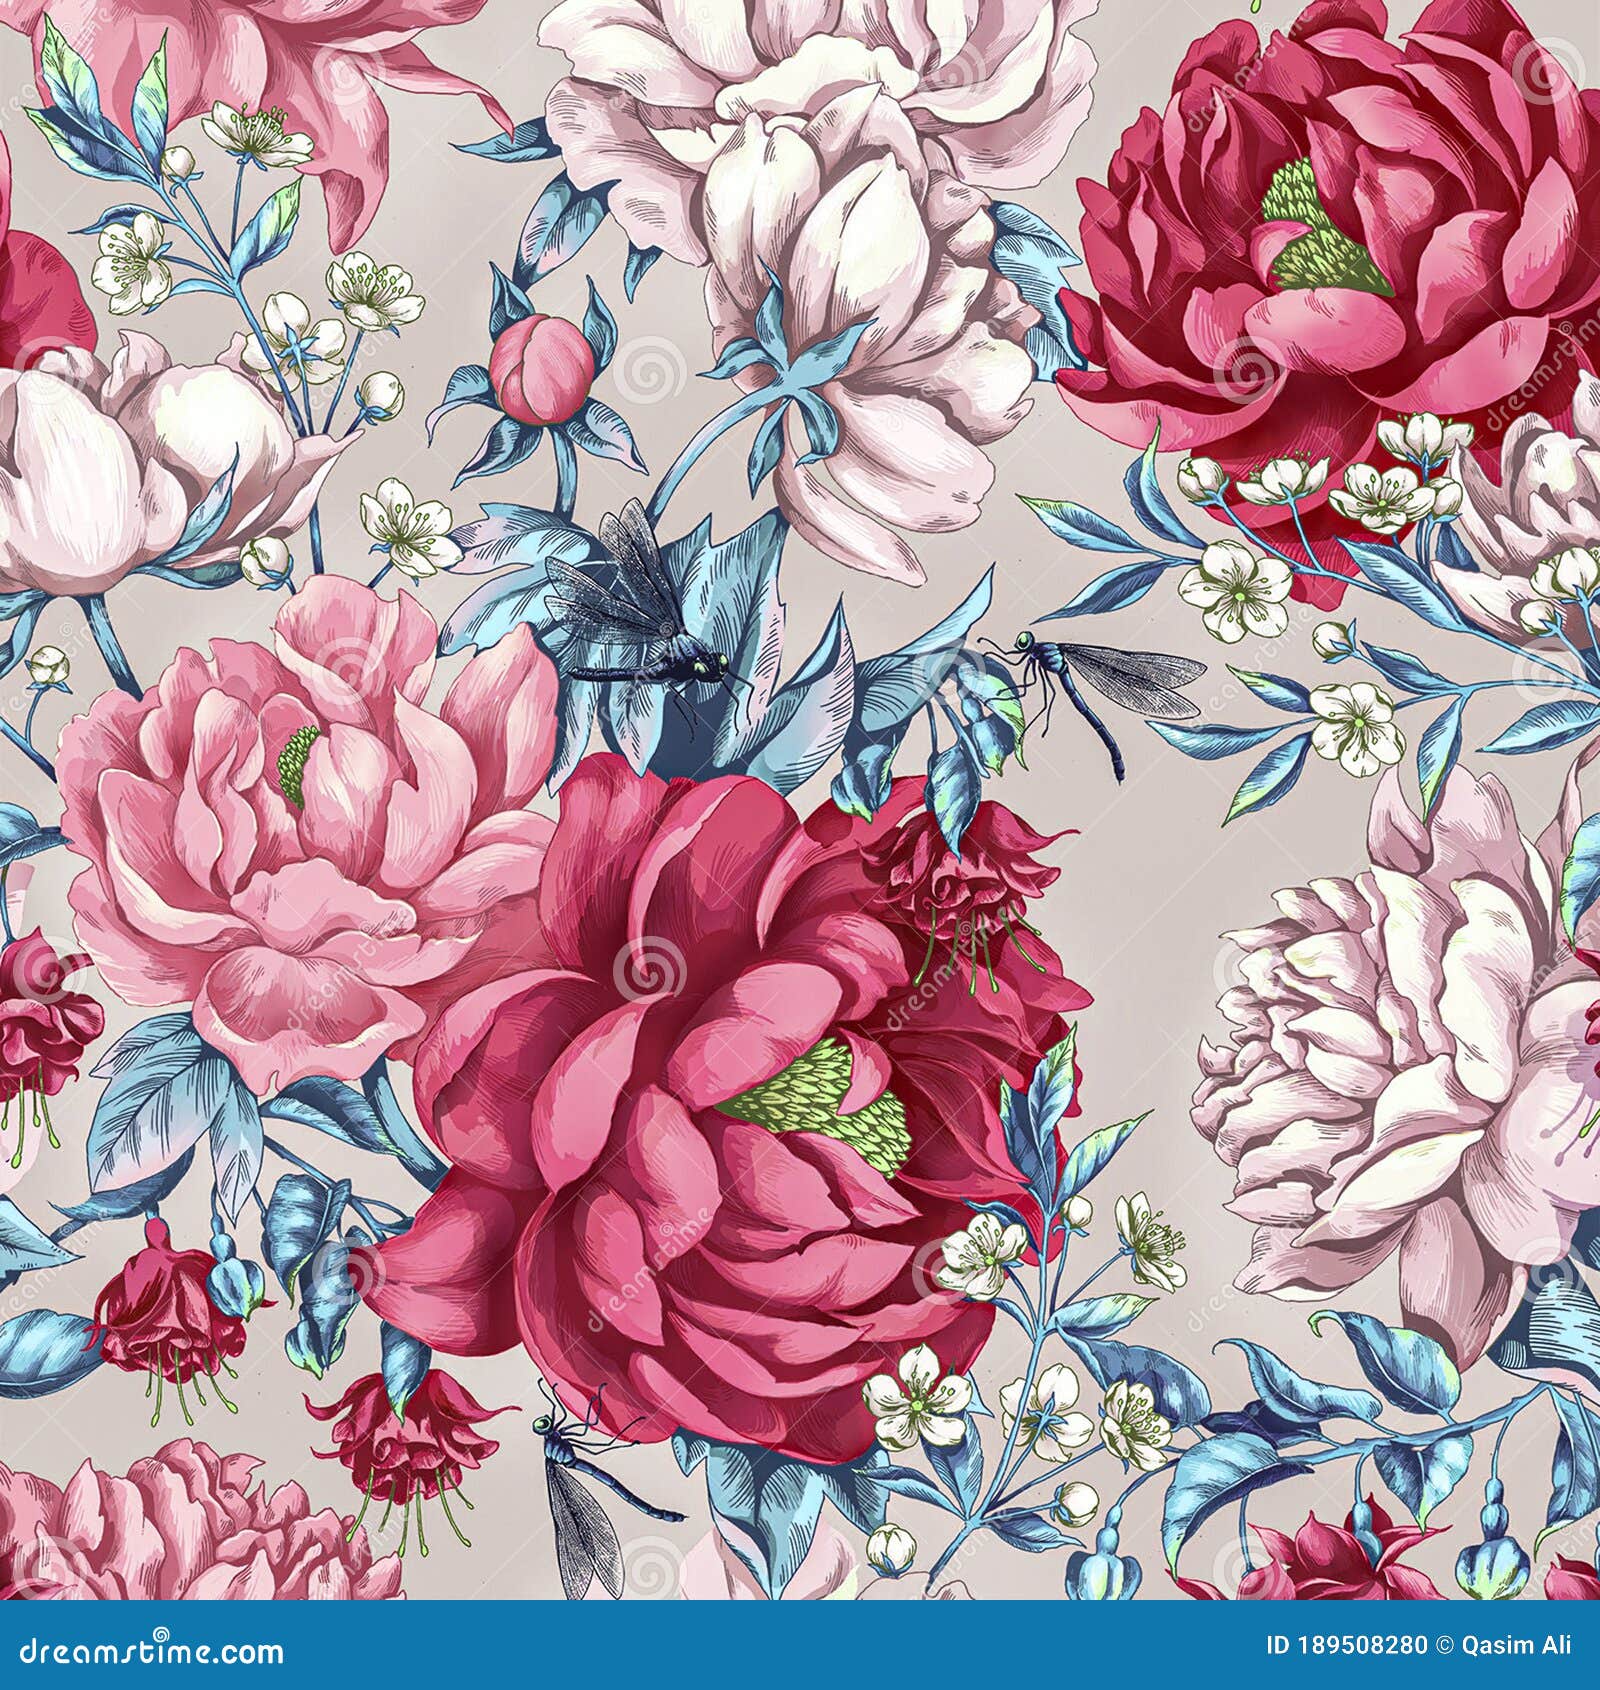 Diseño Textil Digital Patrón De Flores Para Impresión Digital Stock de  ilustración - Ilustración de nuevo, creativo: 189508280